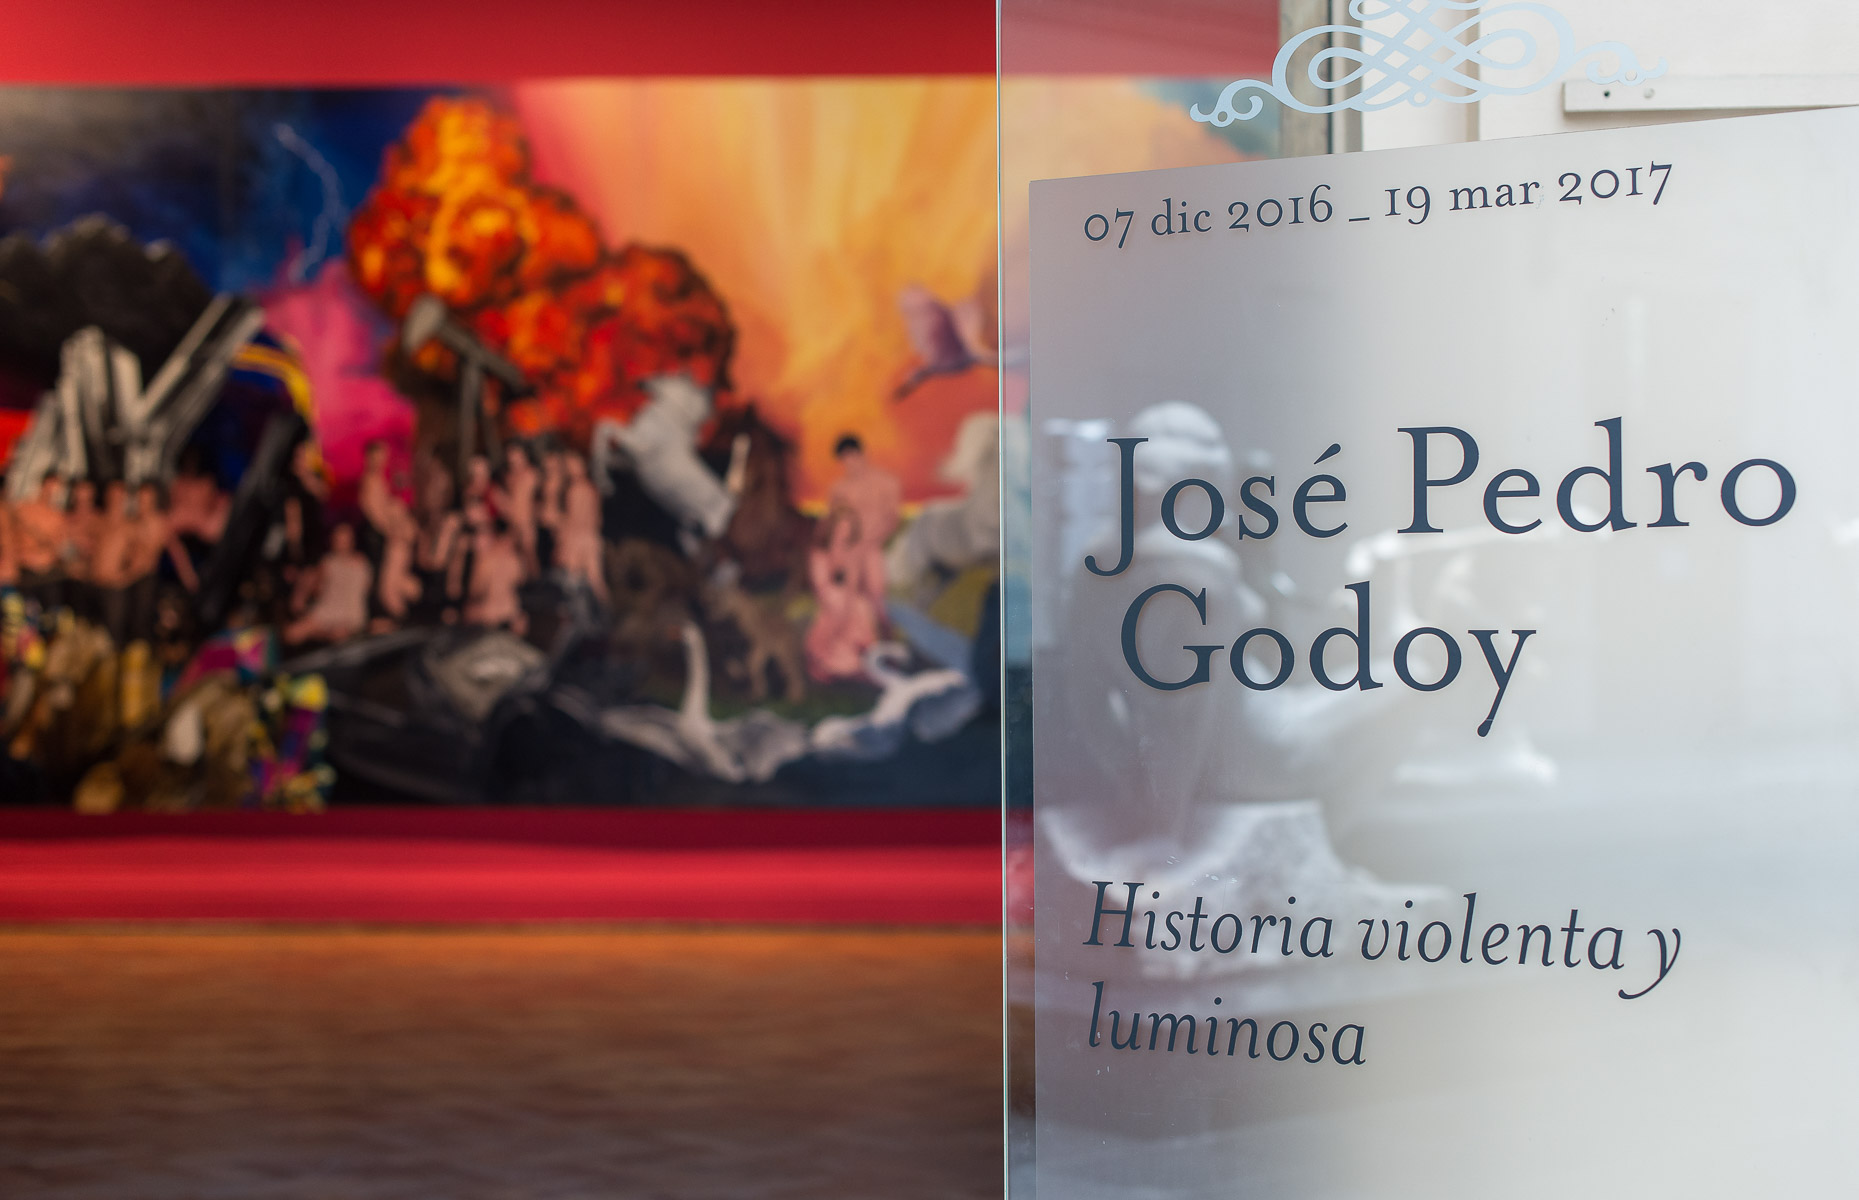  Registro de exposición “Historia Violenta y Luminosa” (Museo Nacional De Bellas Artes)  Artista: José Pedro Godoy 